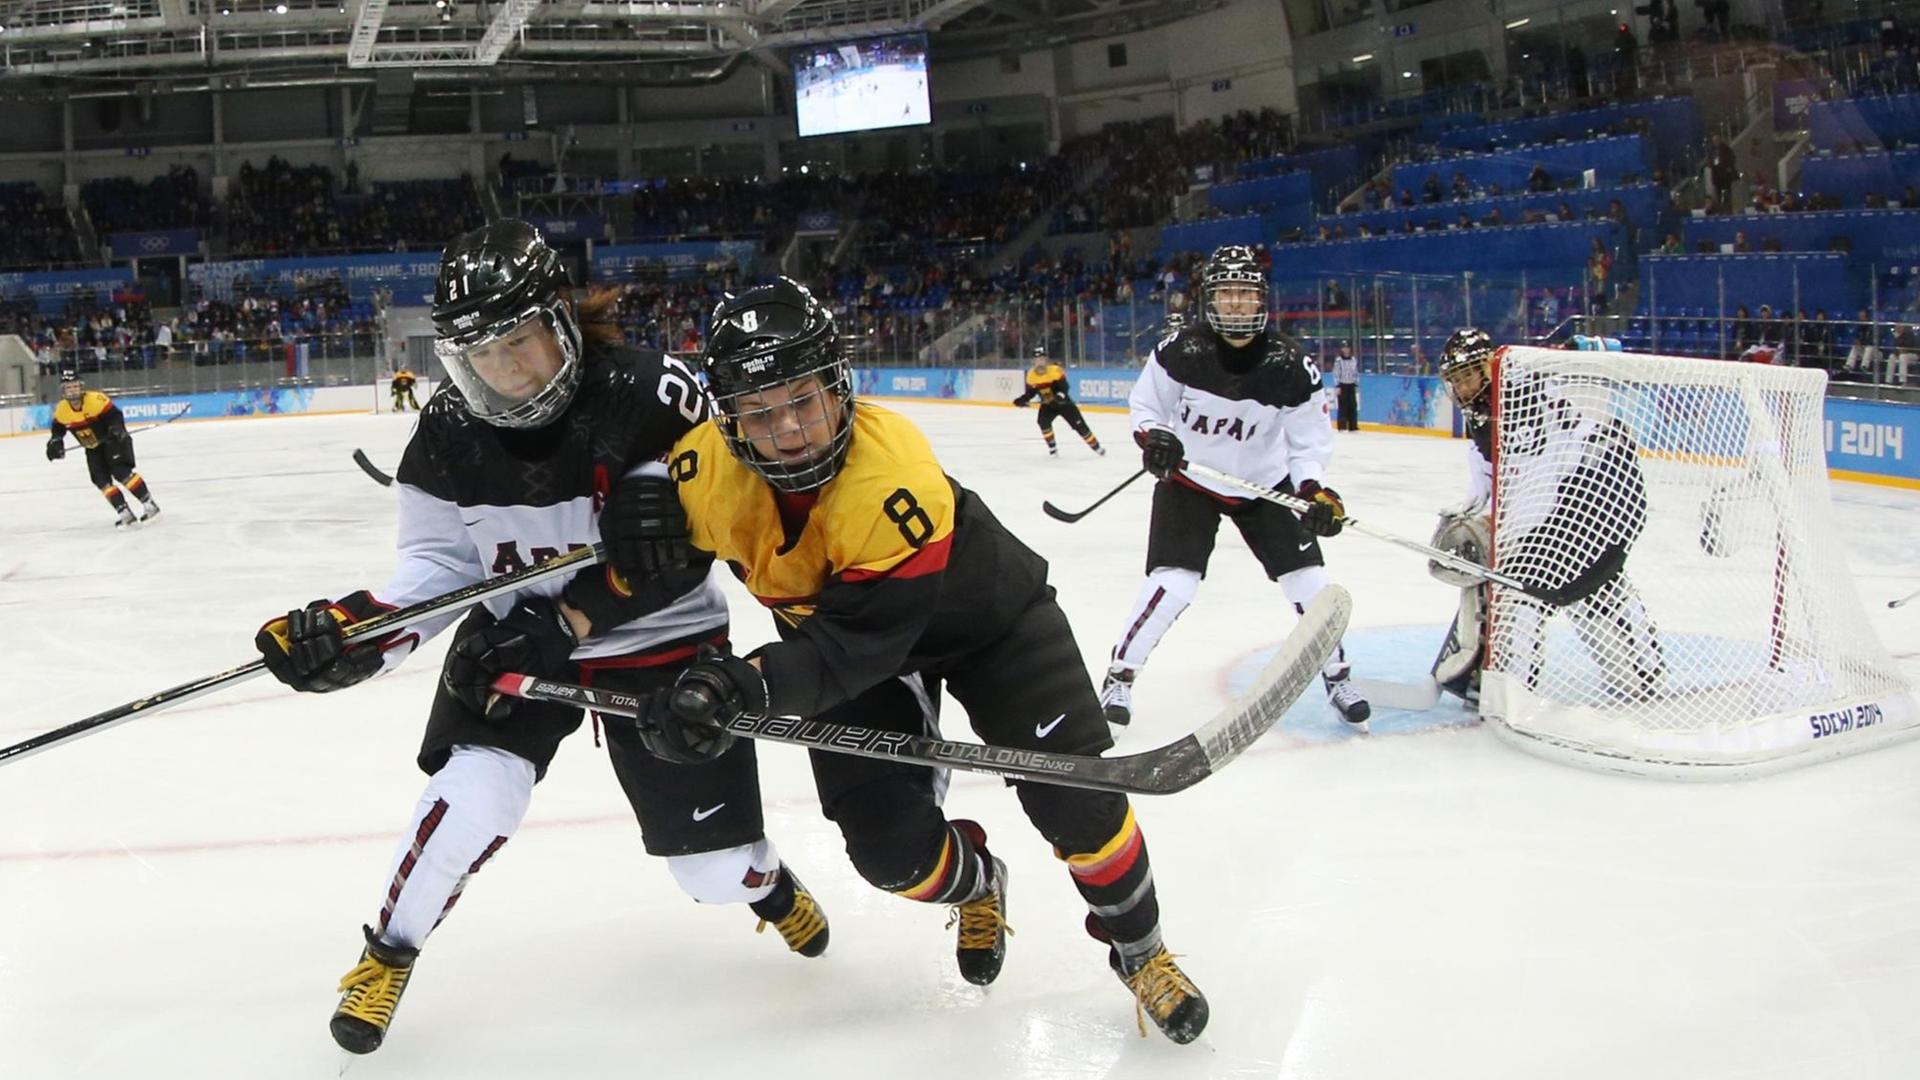 Julia Zorn (rechts), Kapitänin der deutschen Eishockey-Nationalmannschaft, bei der Qualifikation für die Olympischen Spiele von Sotschi 2014.